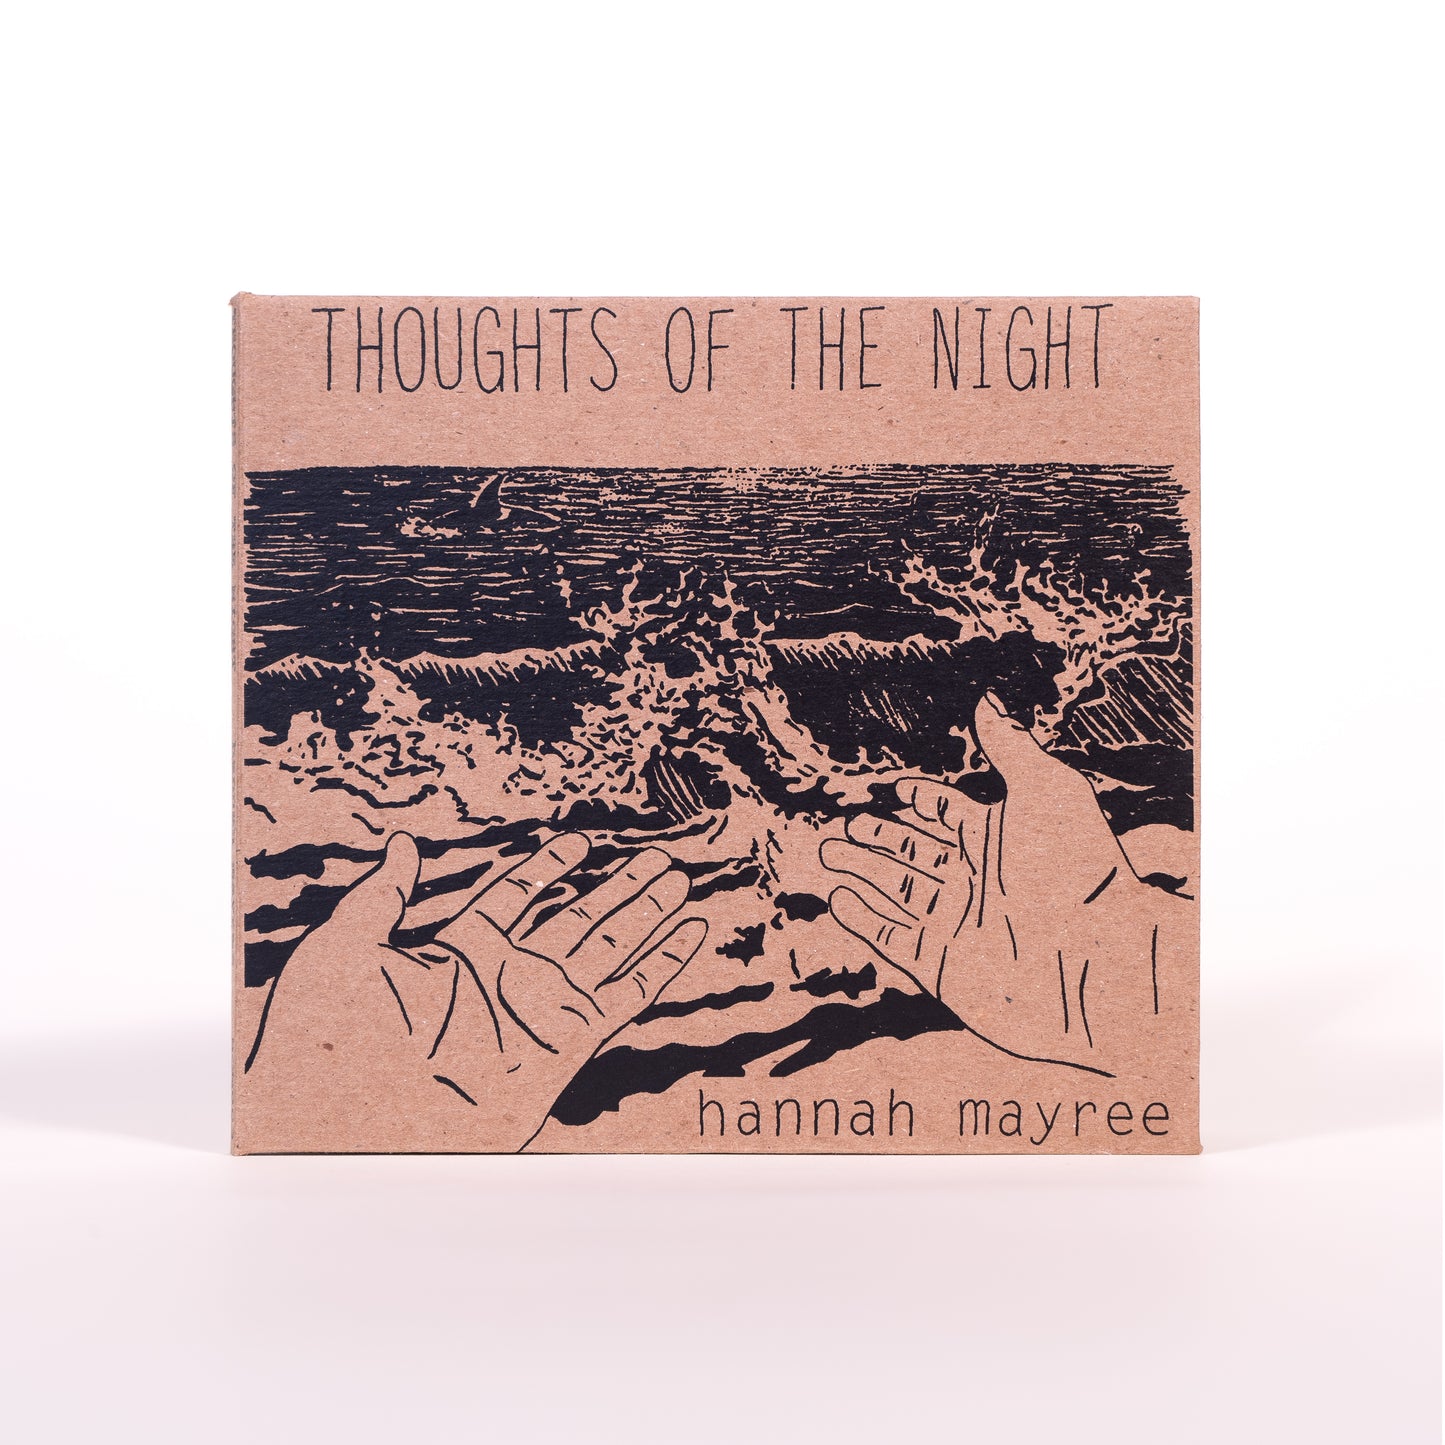 HHH003 - Hannah Mayree "Thoughts of the Night" - CD / Digital